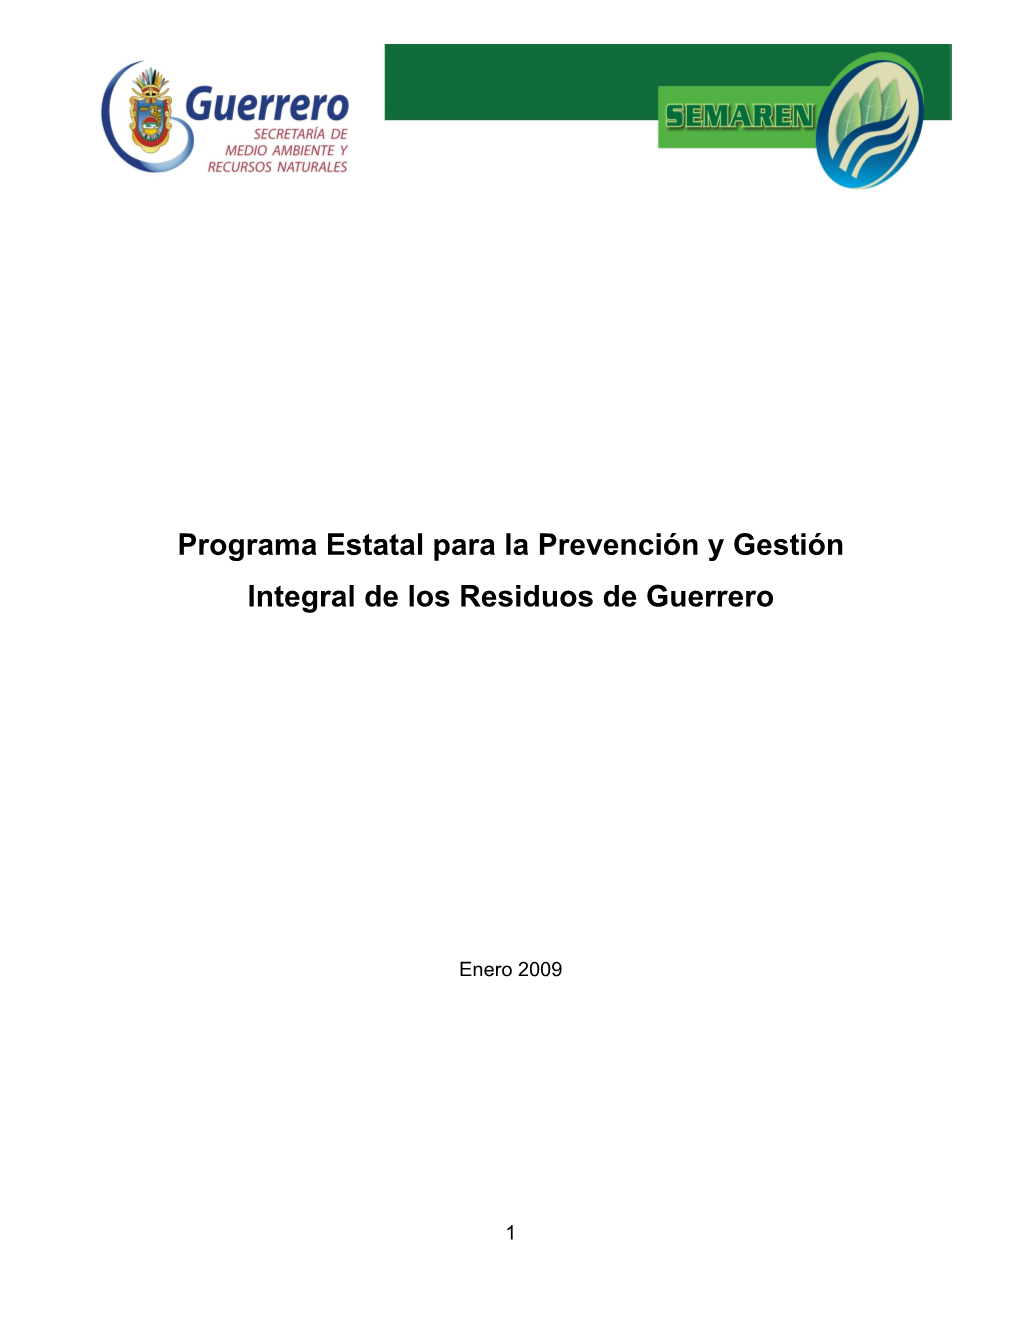 Programa Estatal Para La Prevención Y Gestión Integral De Los Residuos De Guerrero